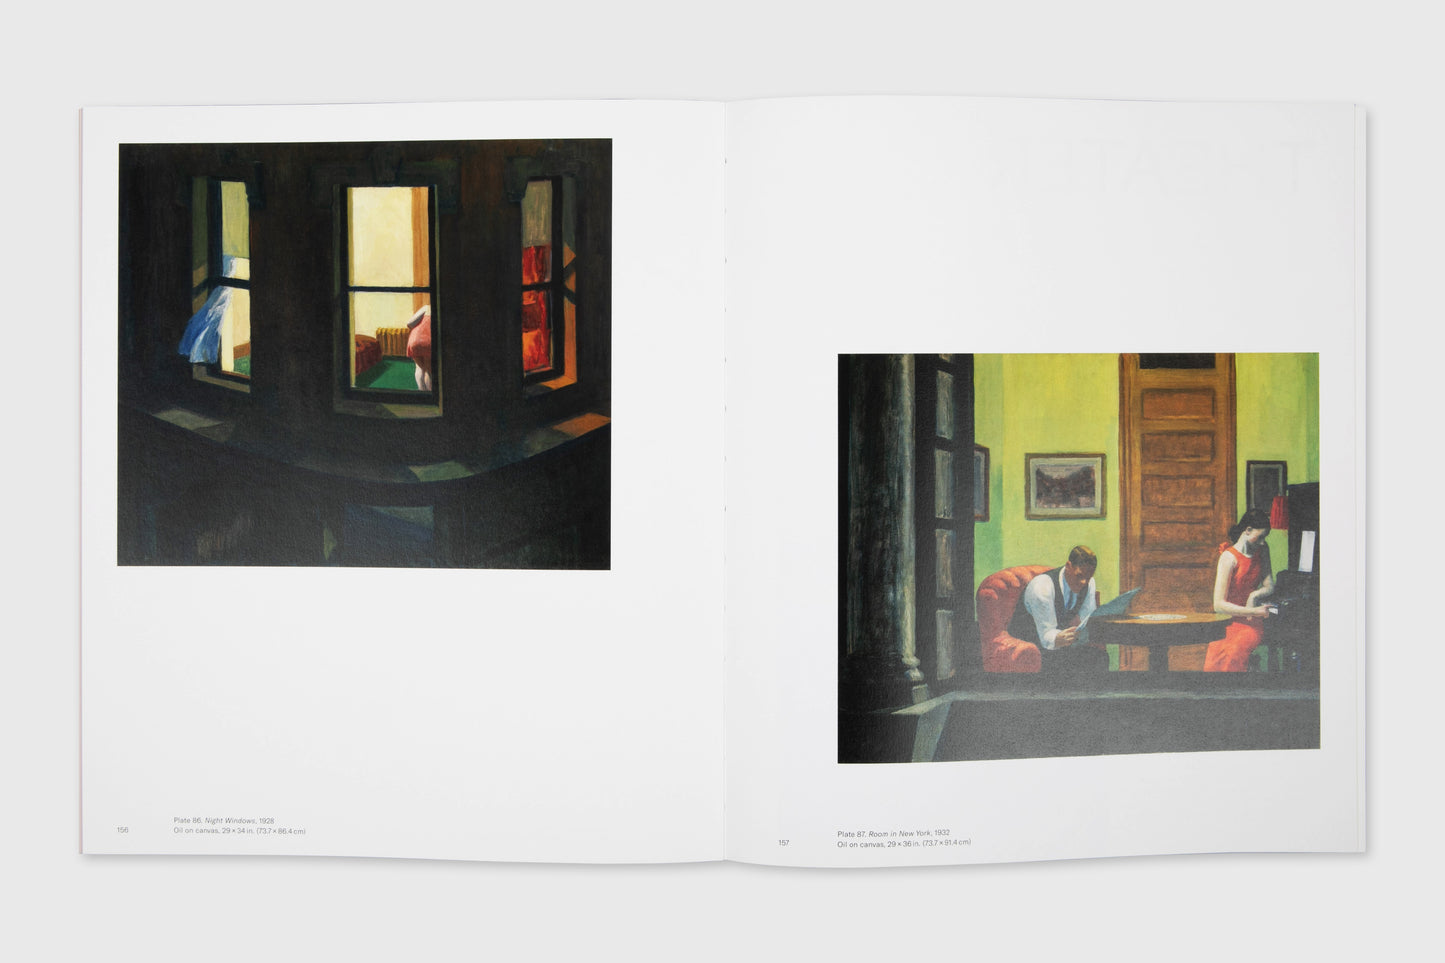 Edward Hopper's New York